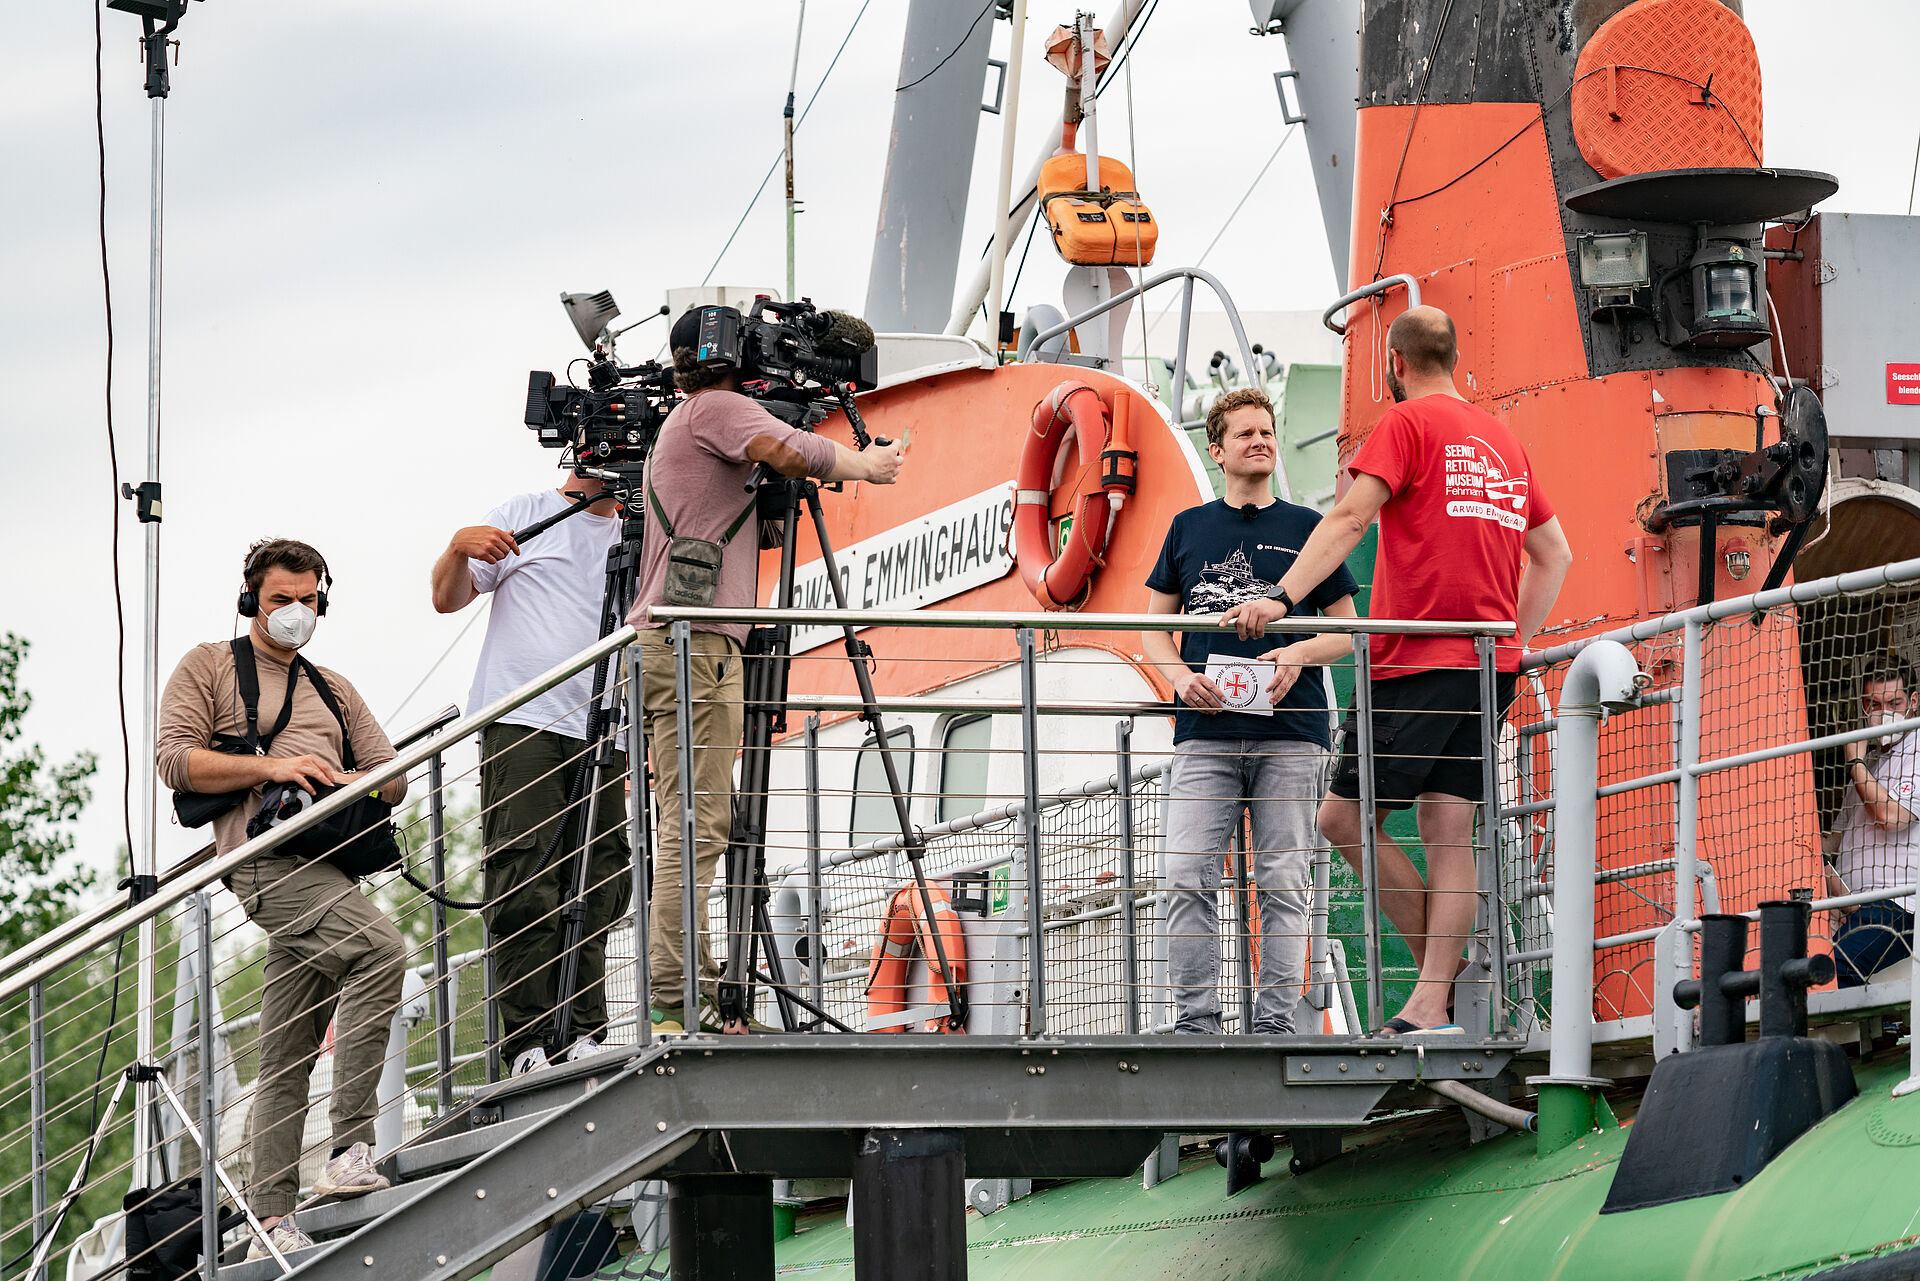 Dreharbeiten an Bord des ehemaligen Seenotrettungskreuzers ARWED EMMINGHAUS auf Fehmarn für den neuen Film der DGzRS zum Tag der Seenotretter 2021